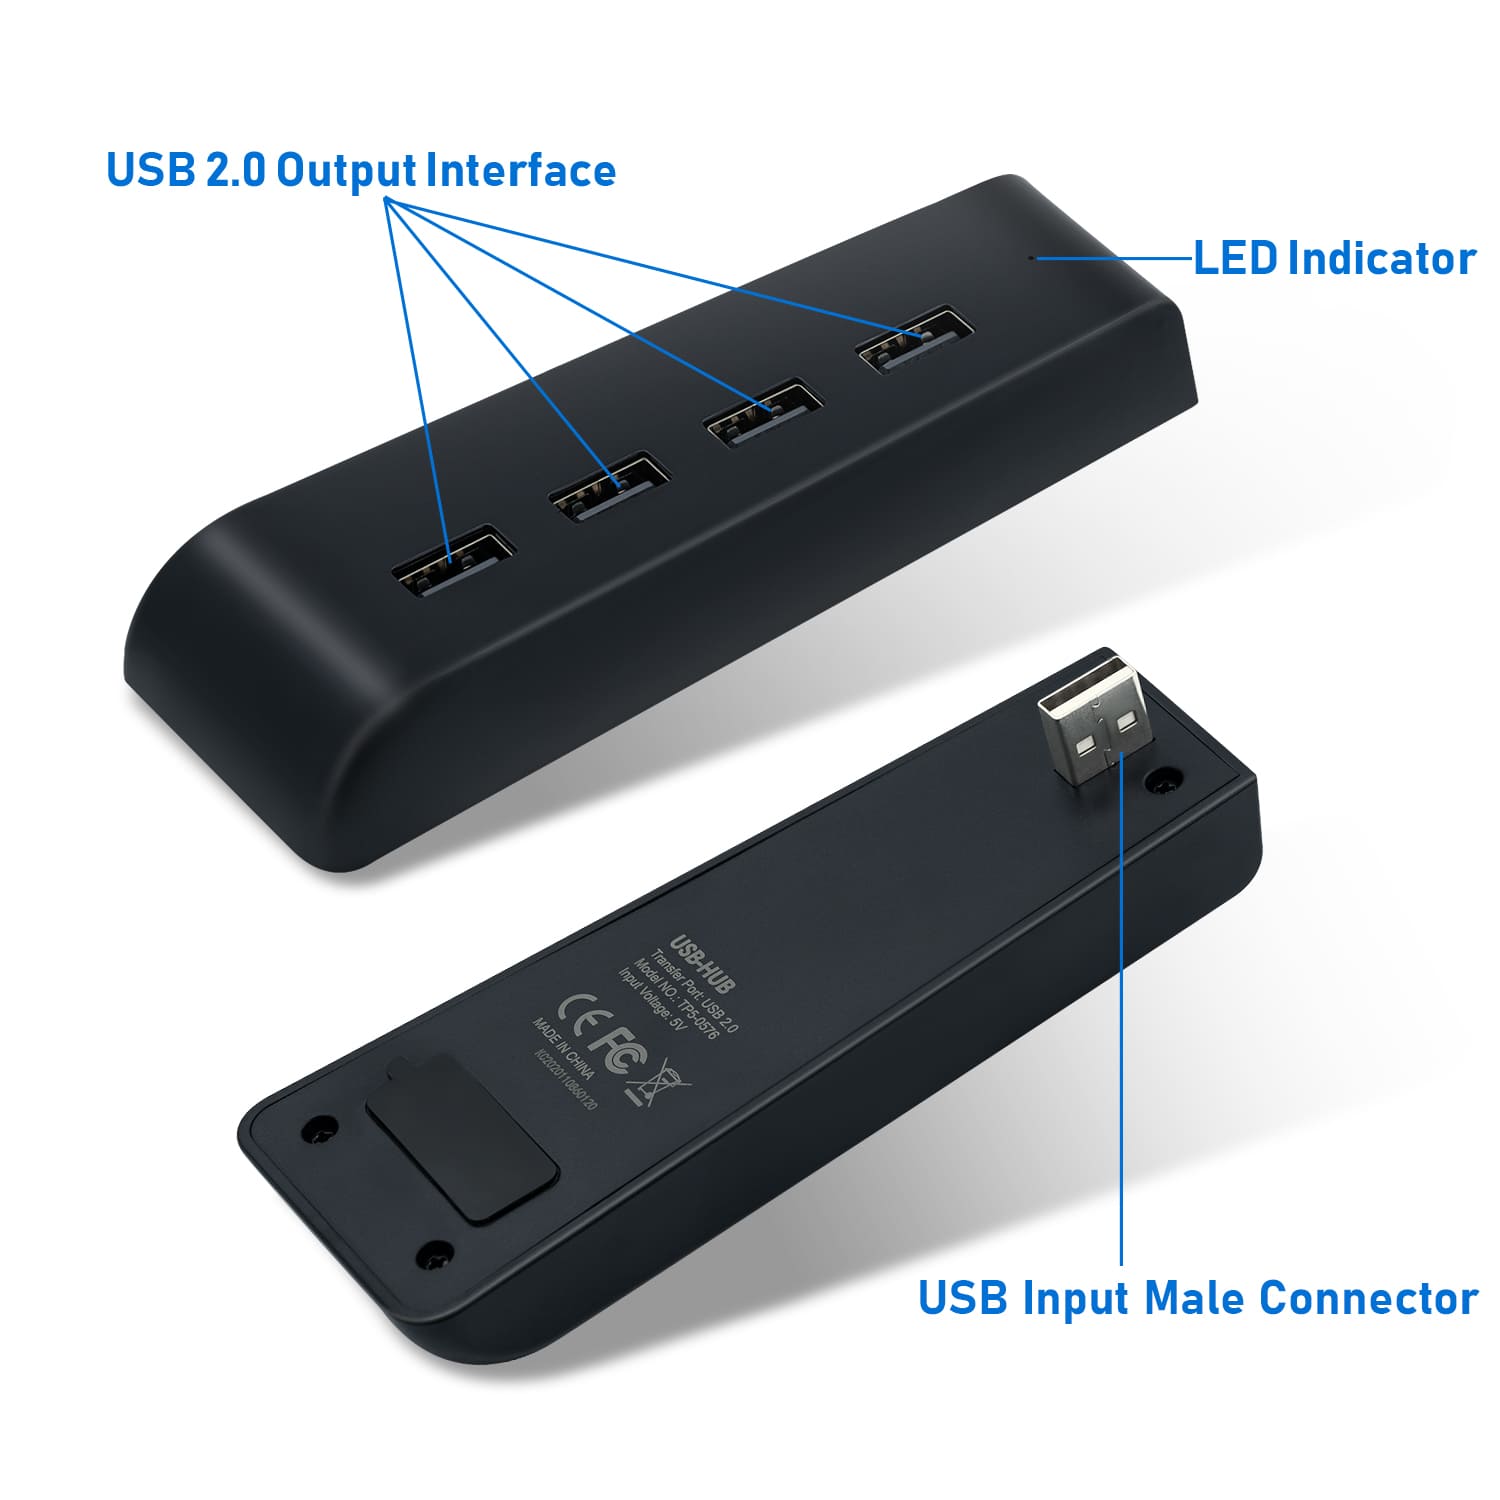 PS5 USB Hub, PS5 USB HUB Adapter with 4 USB 2.0 Ports - Black